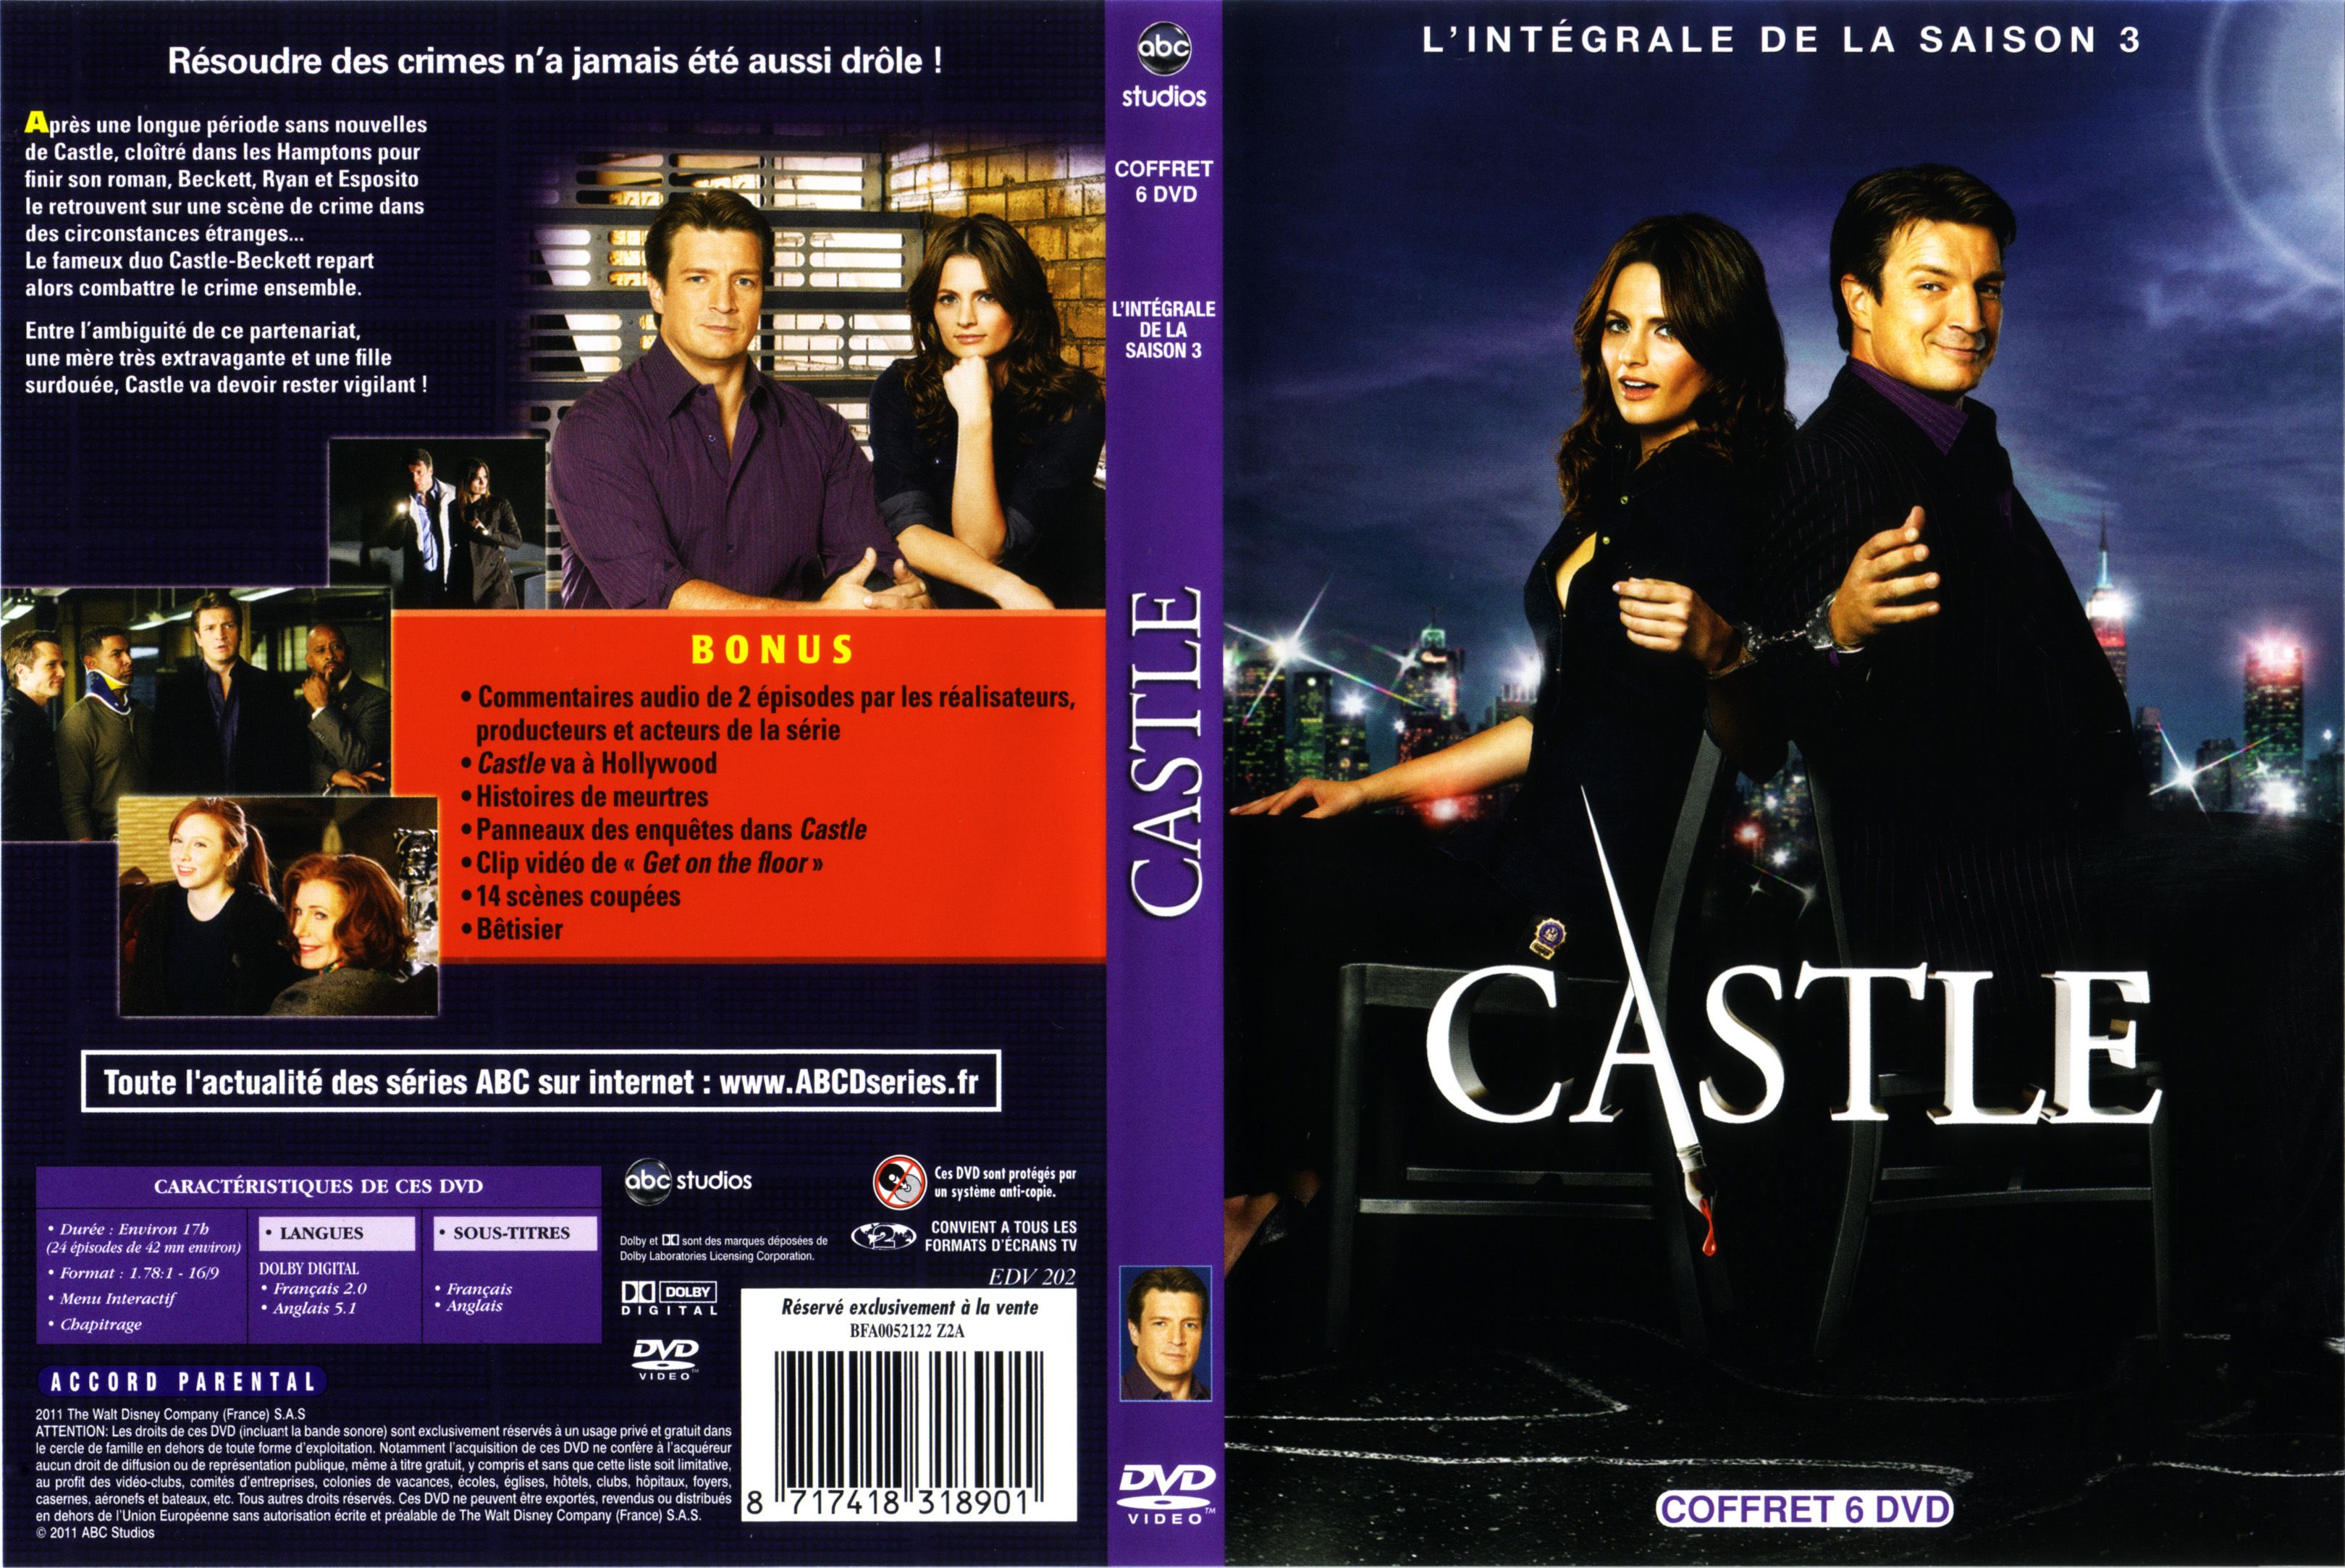 Jaquette DVD Castle saison 3